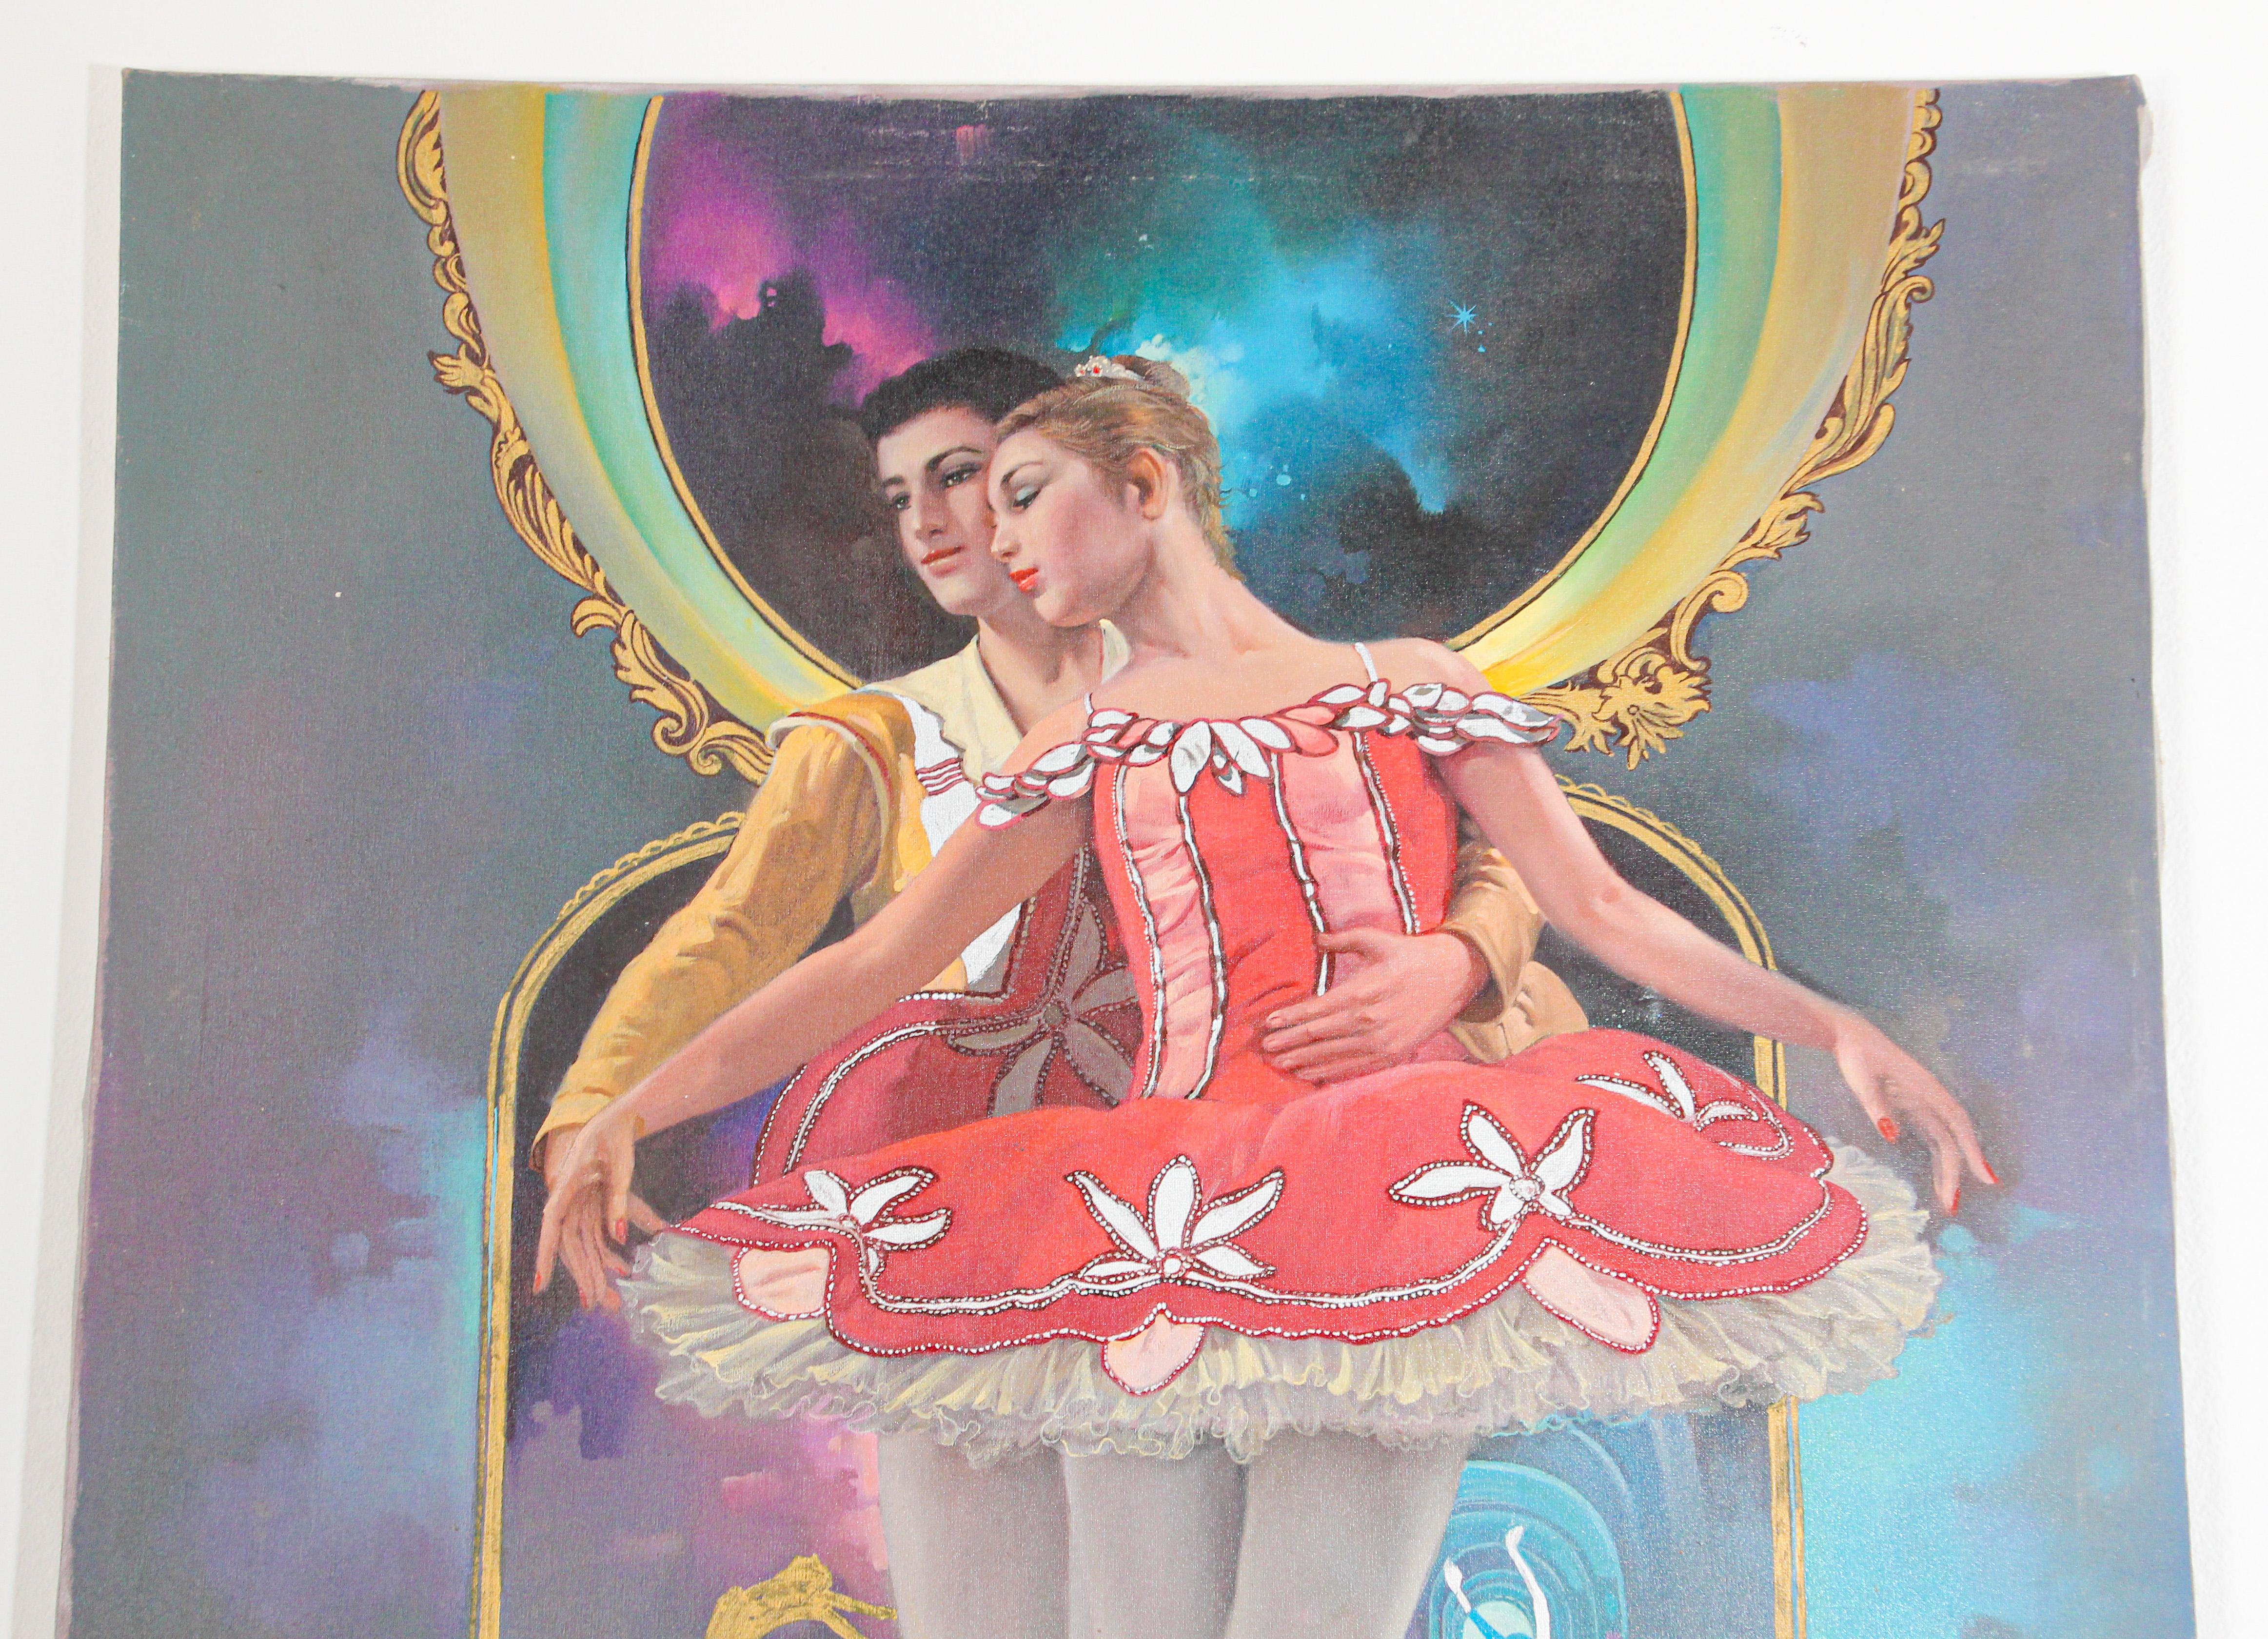 Ölgemälde auf Leinwand klassische russische Balletttänzerinnen.
Russisches klassisches Ballett Ölgemälde.
Das Gemälde ist nicht alt und nicht gerahmt.
Signiert in der linken Ecke.